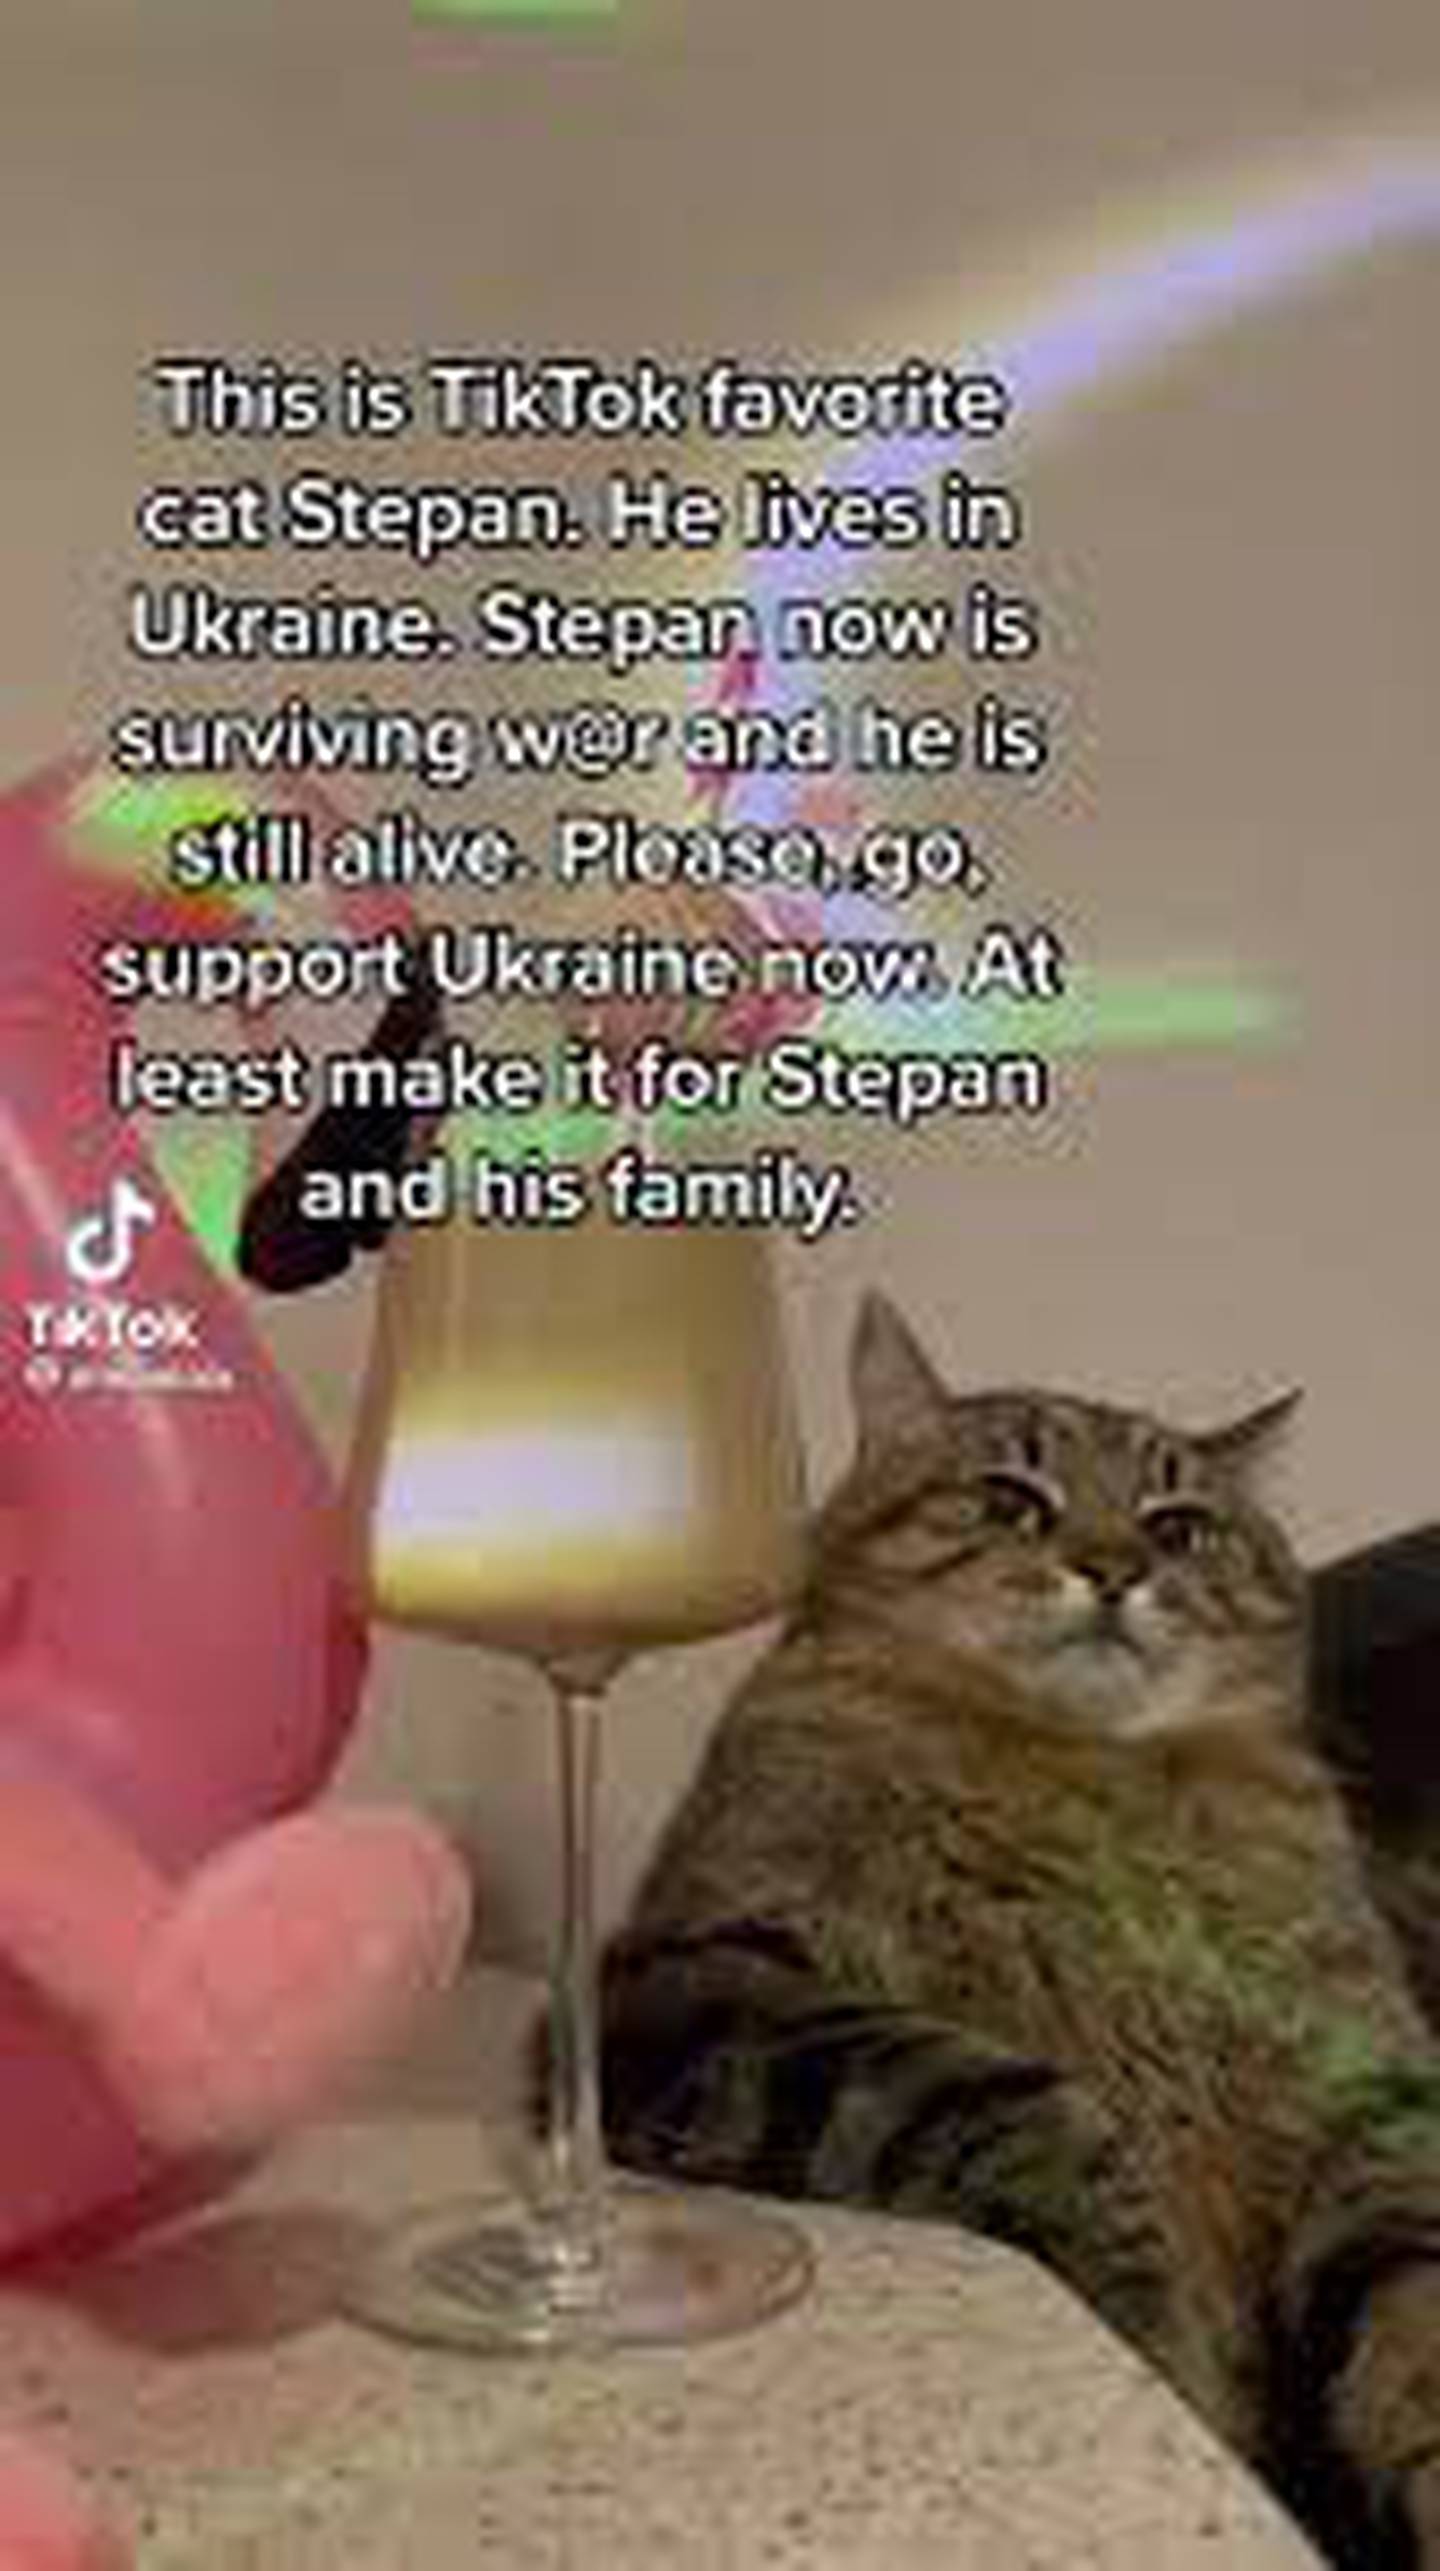 Stepan, el gato famoso de TikTok